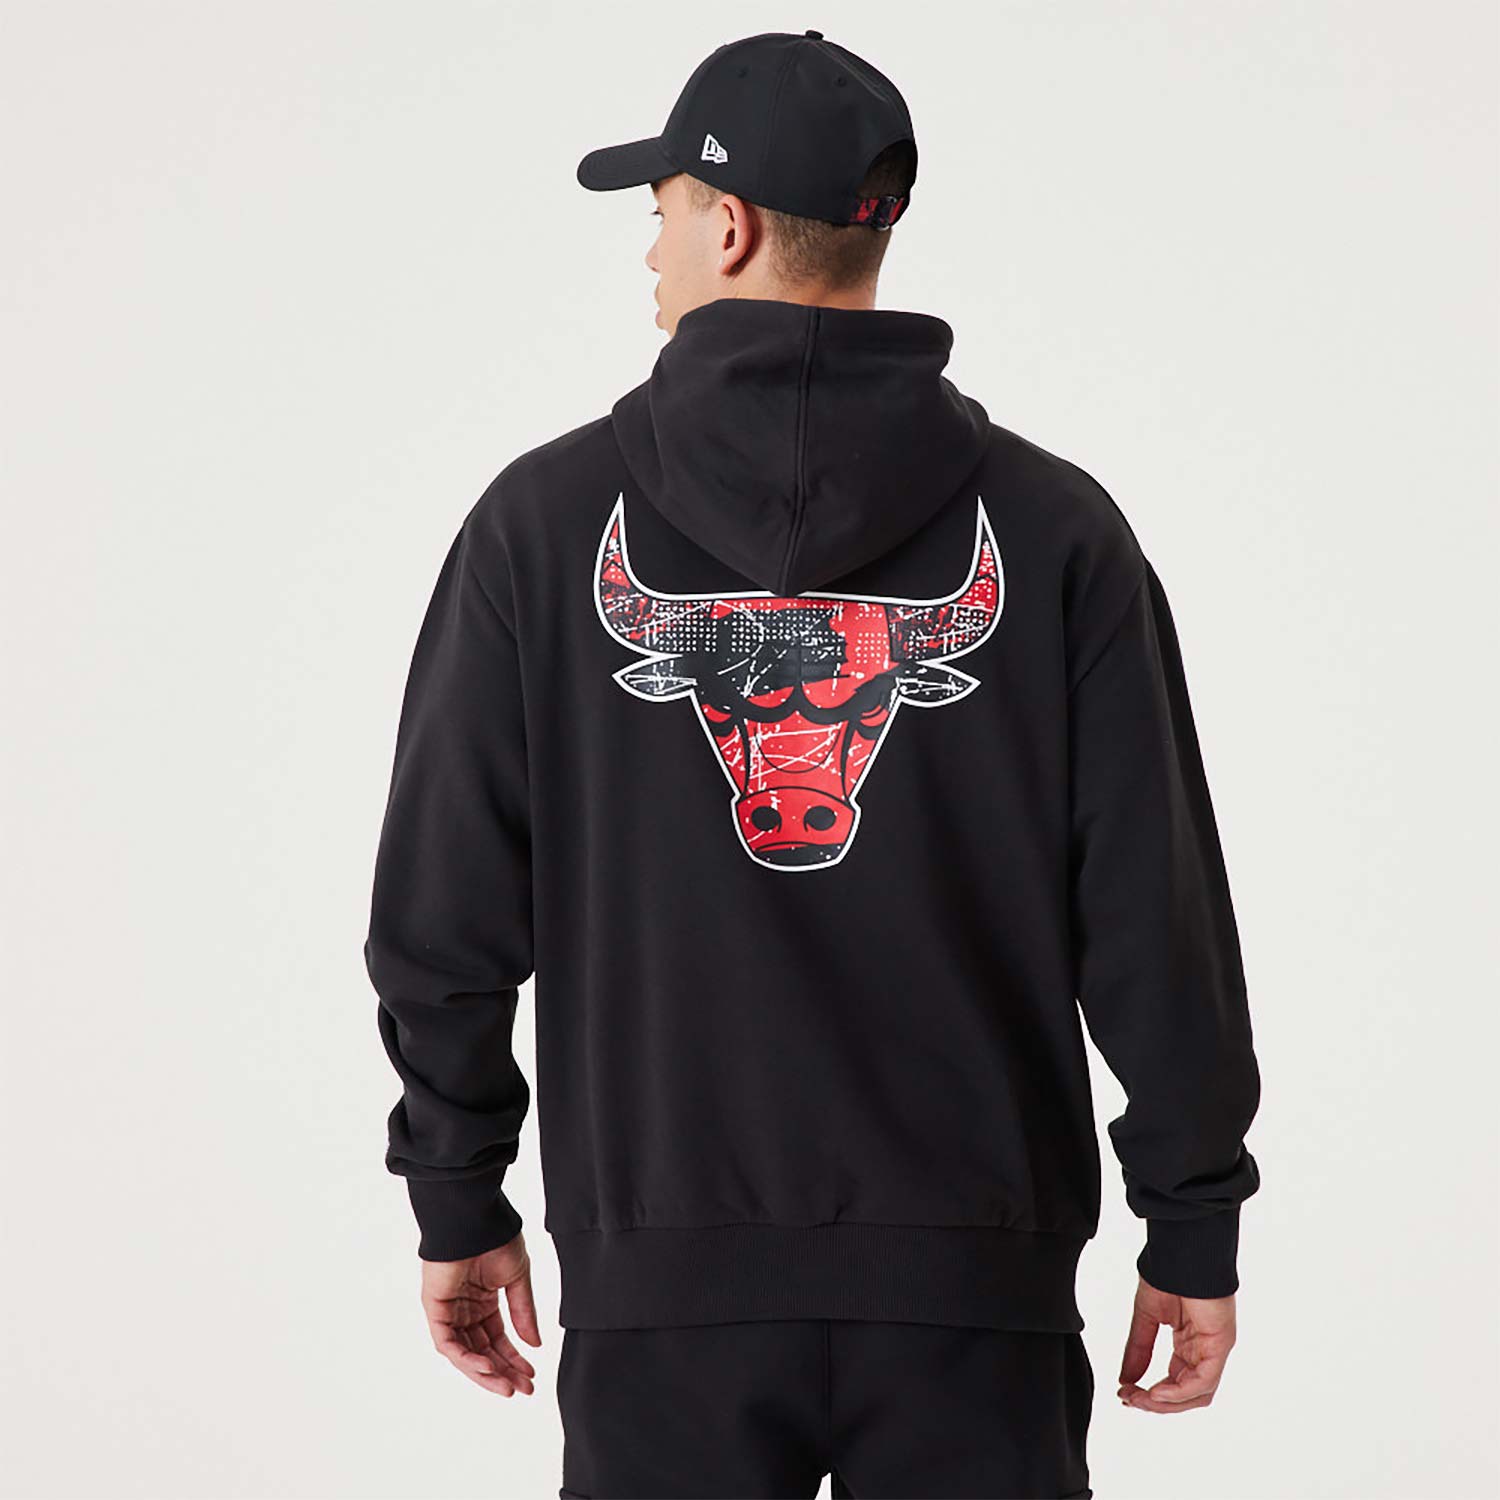 nba bulls hoodie